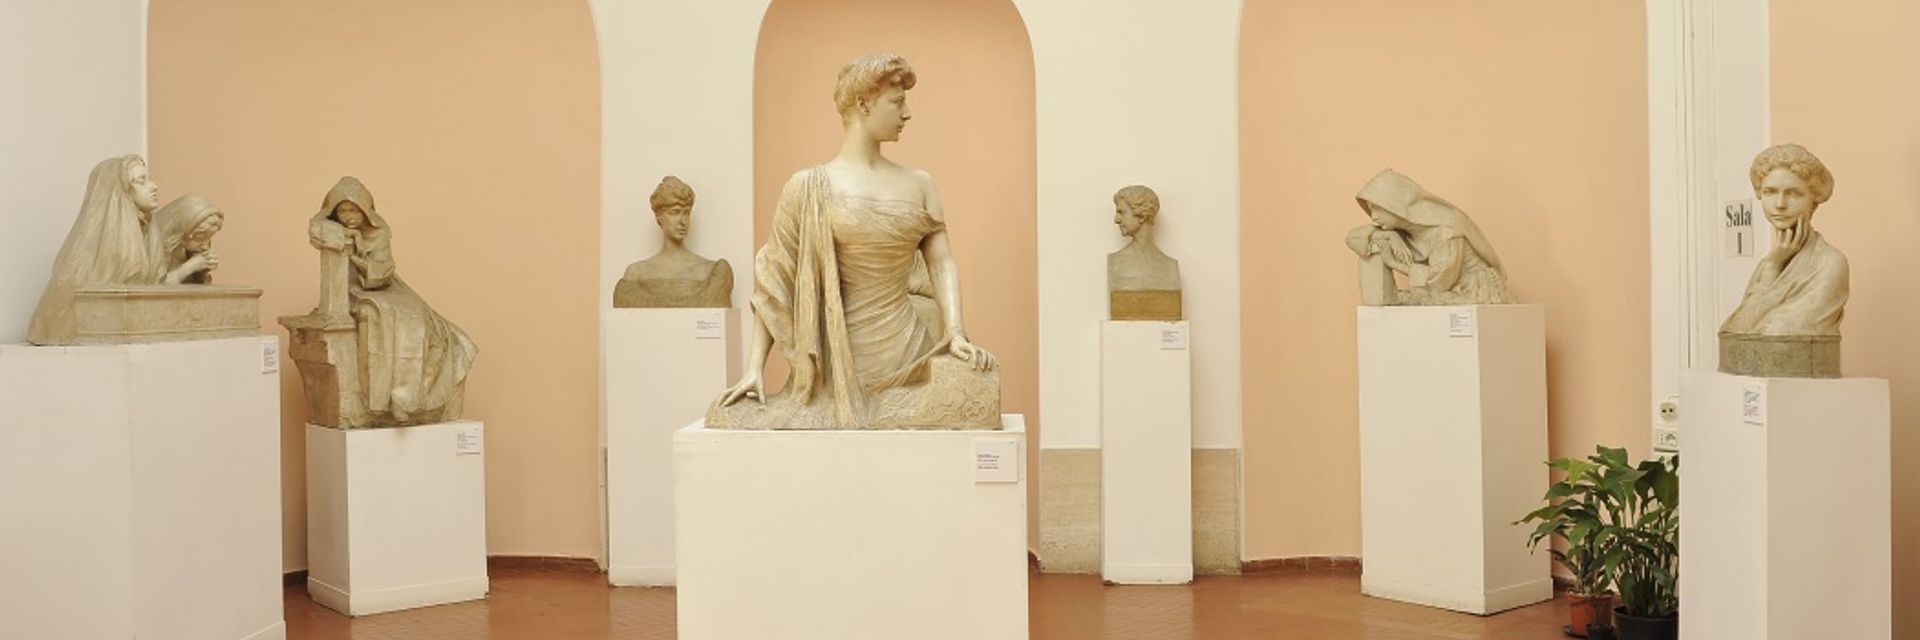 Pietro Canonica Museum in Villa Borghese